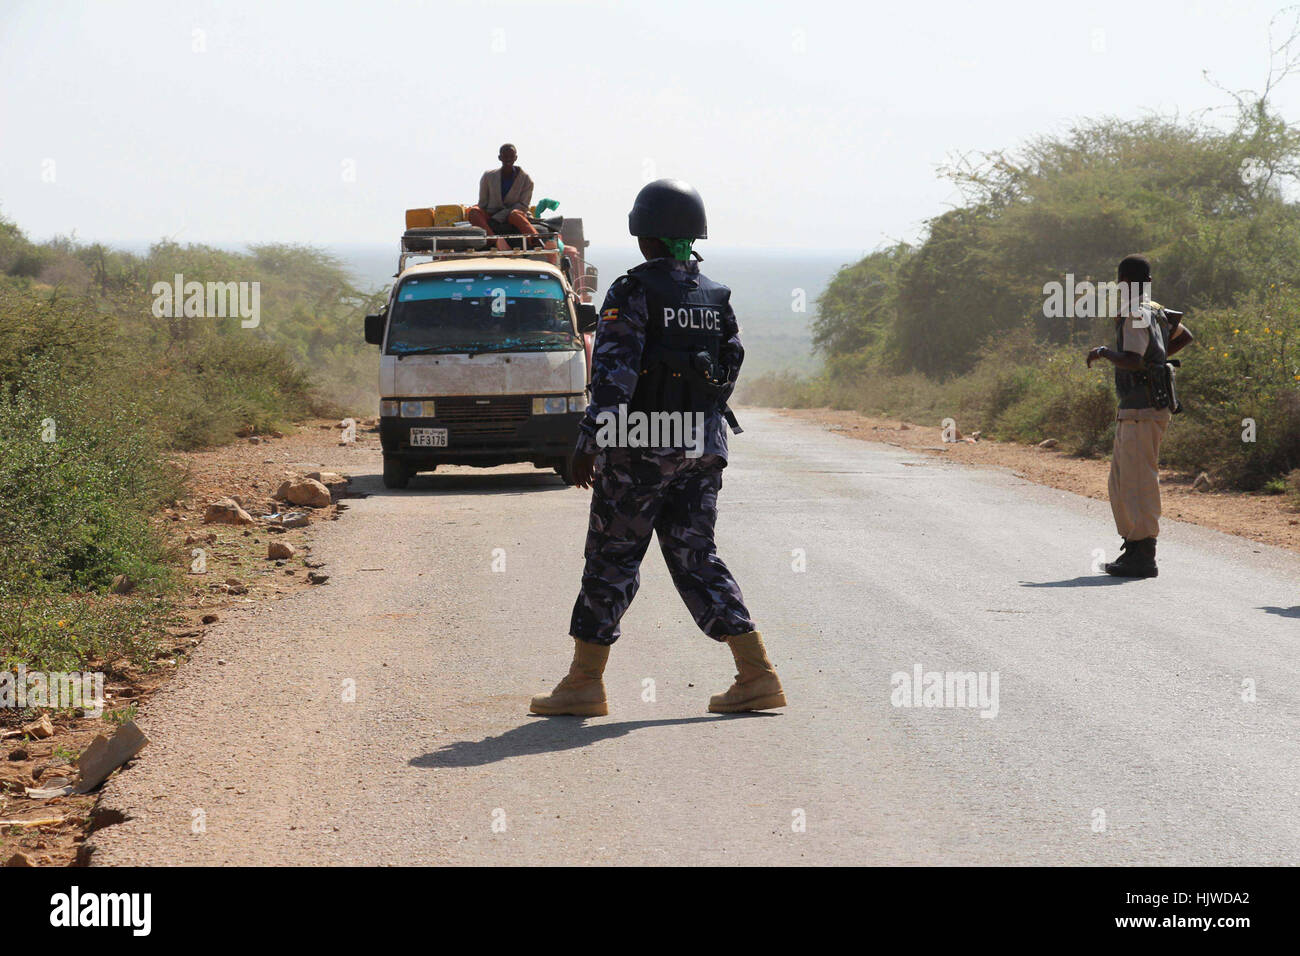 L'AMISOM formato unità di polizia (FPU) e le forze di polizia somale pattugliamenti congiunti intorno a Baidoa, Somalia, il 12 dicembre 2012. I pattugliamenti comuni sono destinati a mettere un coperchio stretto sulla sicurezza a Baidoa. Baidoa ha assistito senza incidente superiore e inferiore alle elezioni della casa, grazie agli sforzi collettivi di AMISOM la polizia insieme con il somalo di forze di polizia. Foto Stock